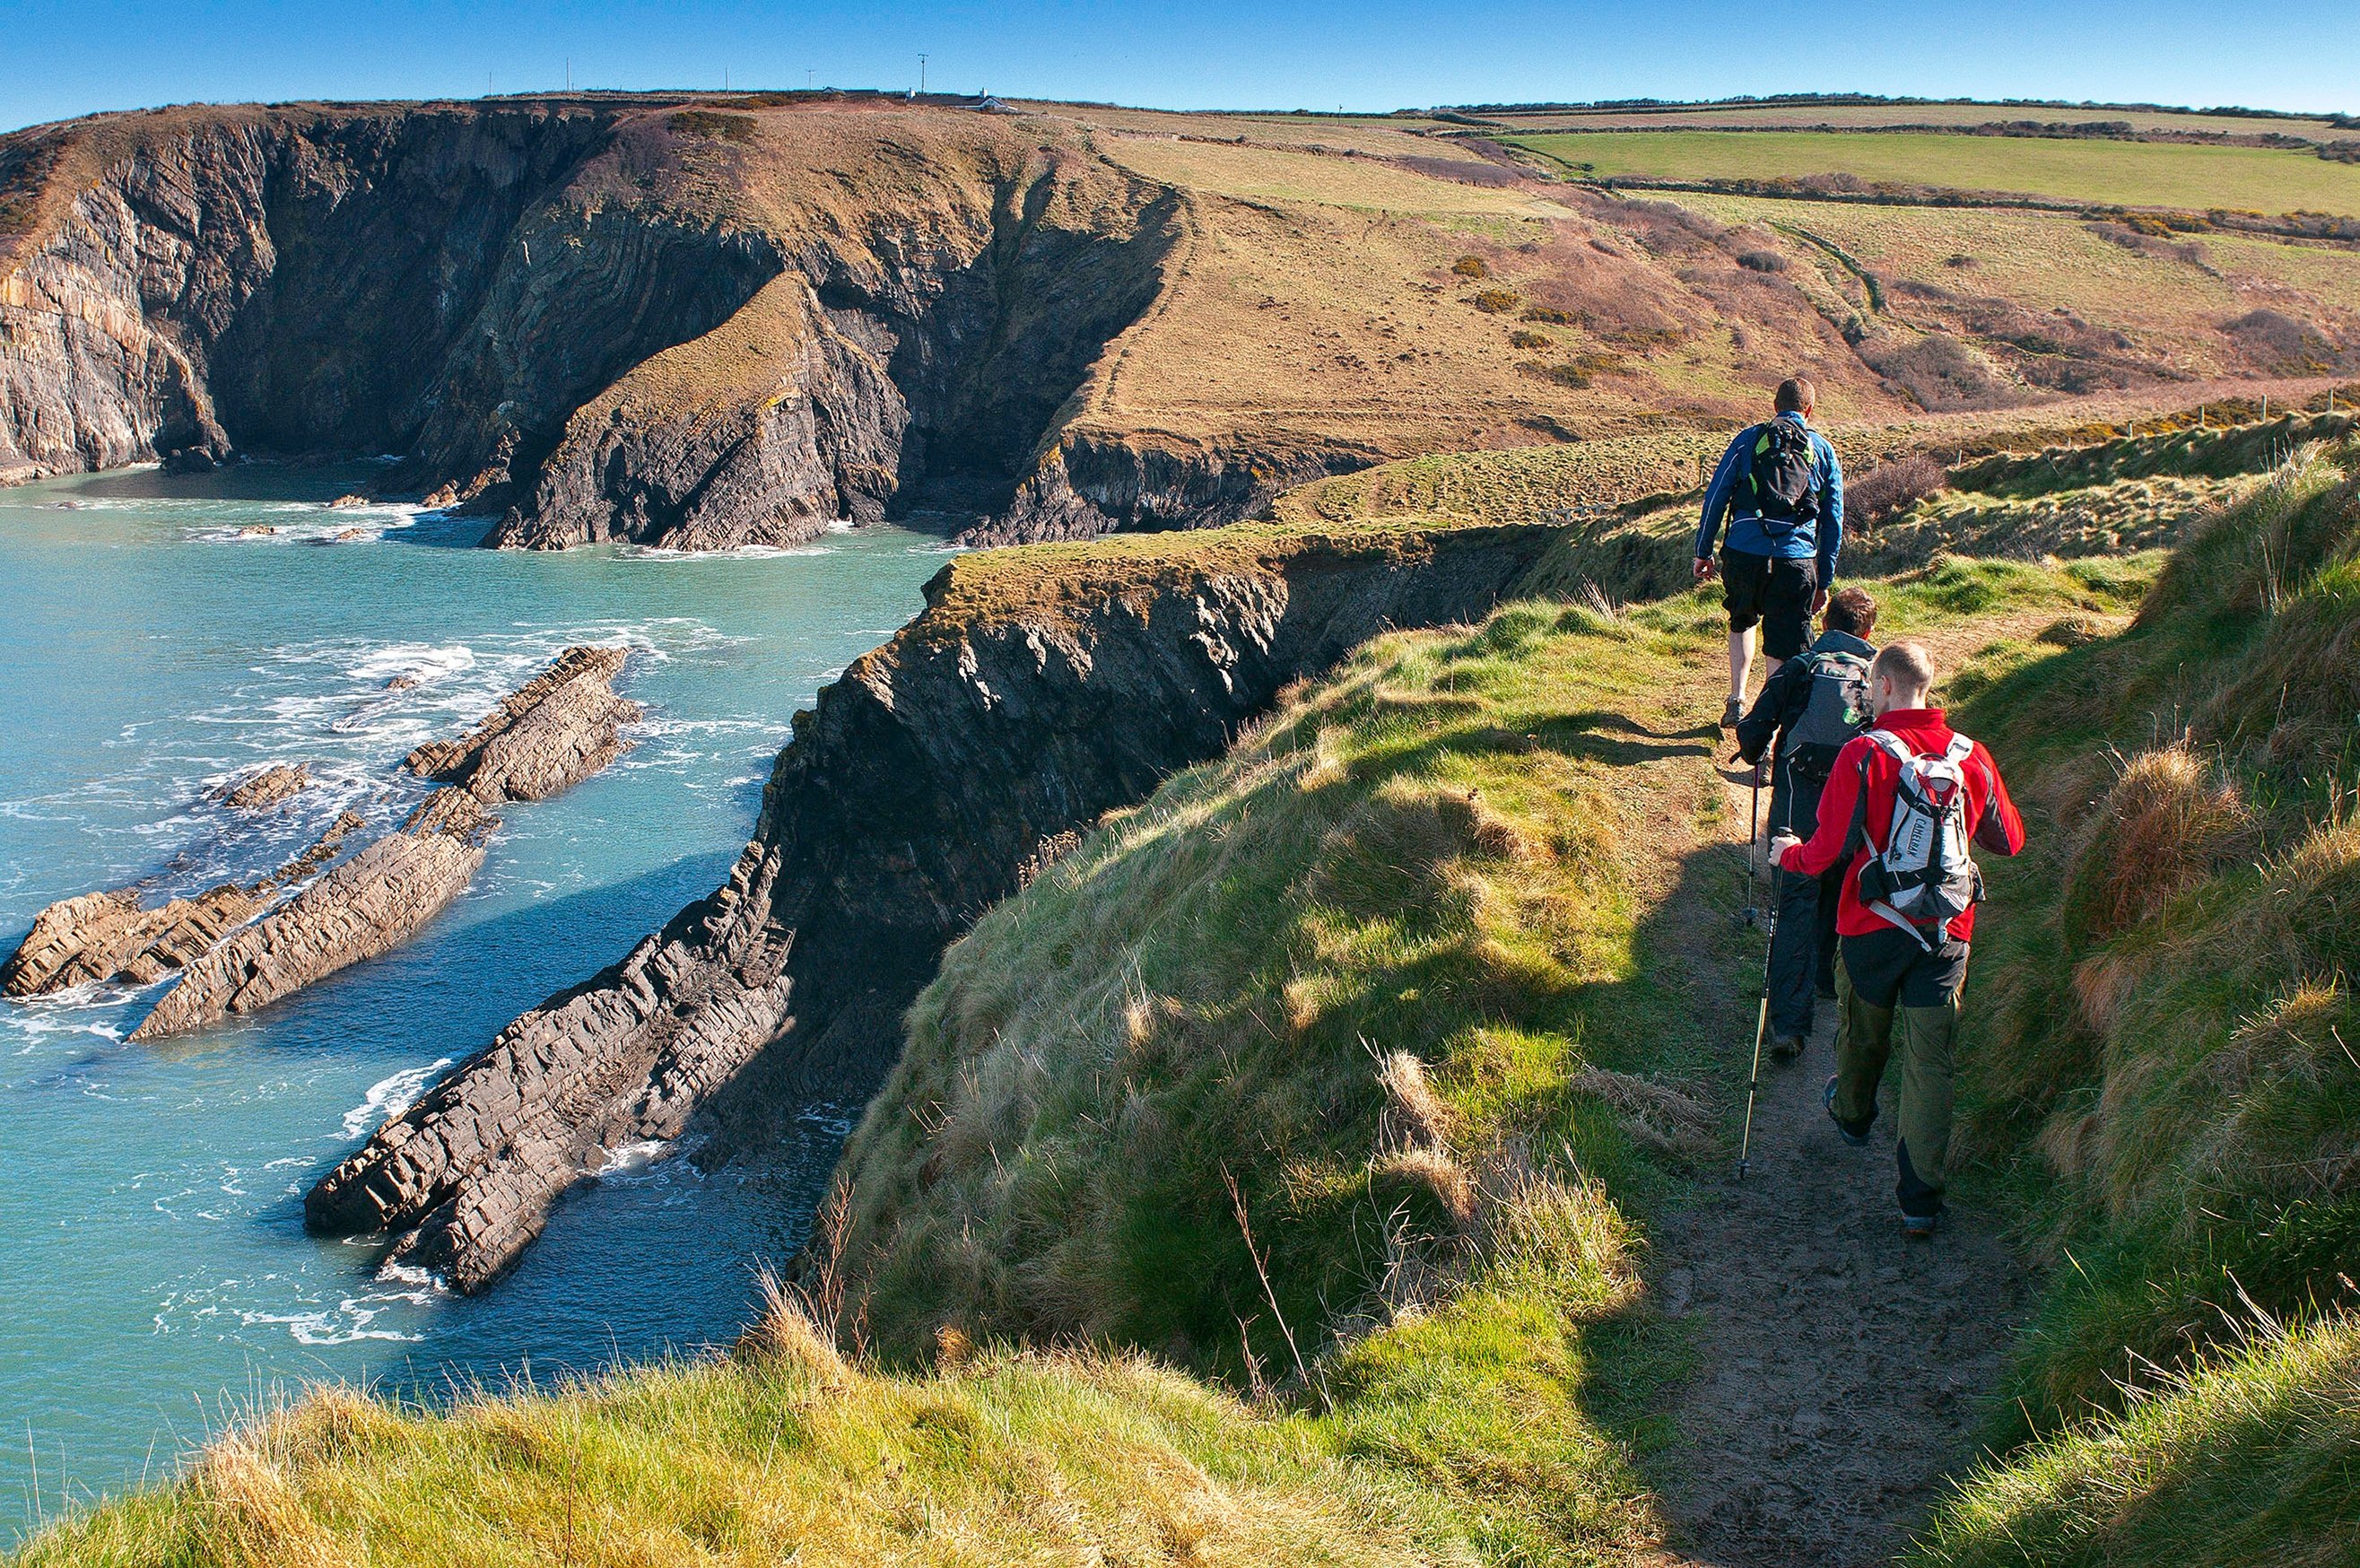 Lanskap Pembrokeshire dengan Wales Coast Path-nya sudah menjadi tujuan populer bagi para pejalan kaki – terlebih lagi sejak situs tersebut digunakan sebagai makam Dobby dalam film Harry Potter, Wales, 29 September 2015. (Foto dpa)